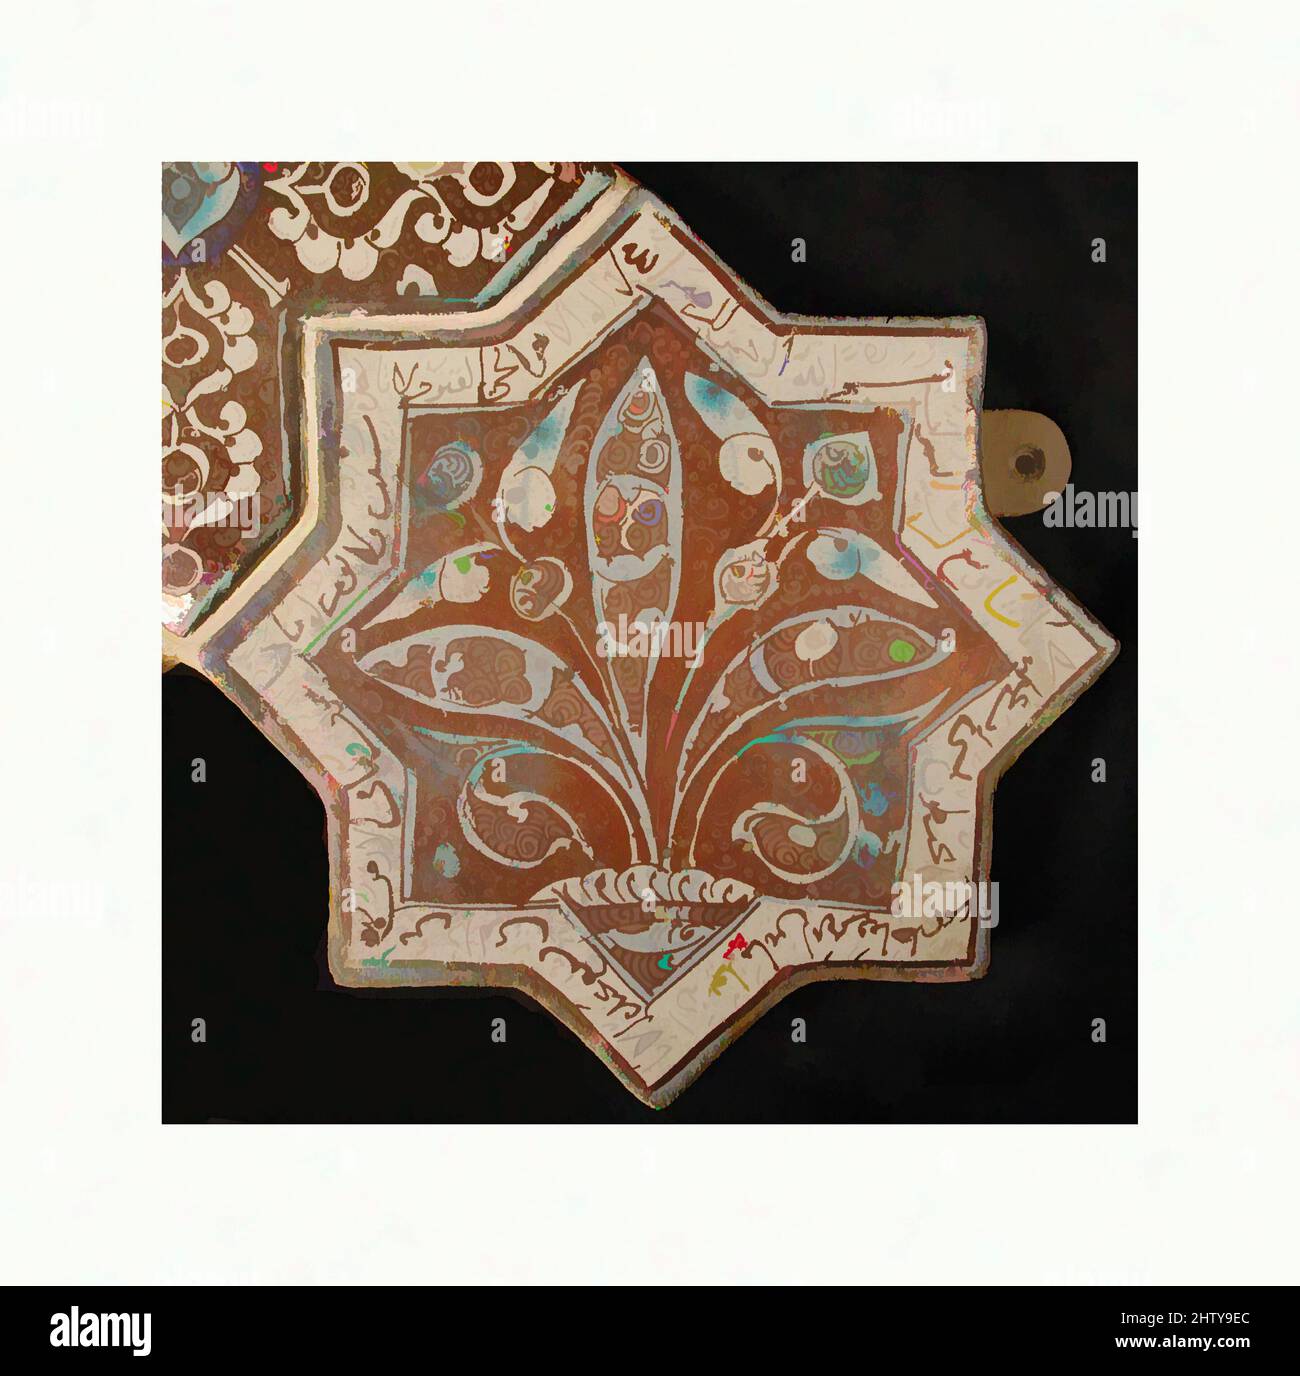 Art inspiré par les carreaux en forme d'étoile, 13th–14th siècle, fabriqués en Iran, probablement Kashan, Stonepaste; peinture à l'inglaze en bleu et turquoise et peinture lustrée sur vernis blanc opaque, 8 x 8 po. (20,3 x 20,3 cm), carreaux de céramique, carreaux en forme d'étoile à huit pointes portent souvent l'arabe et le persan, œuvres classiques modernisées par Artotop avec un peu de modernité. Formes, couleur et valeur, impact visuel accrocheur sur l'art émotions par la liberté d'œuvres d'art d'une manière contemporaine. Un message intemporel qui cherche une nouvelle direction créative. Artistes qui se tournent vers le support numérique et créent le NFT Artotop Banque D'Images